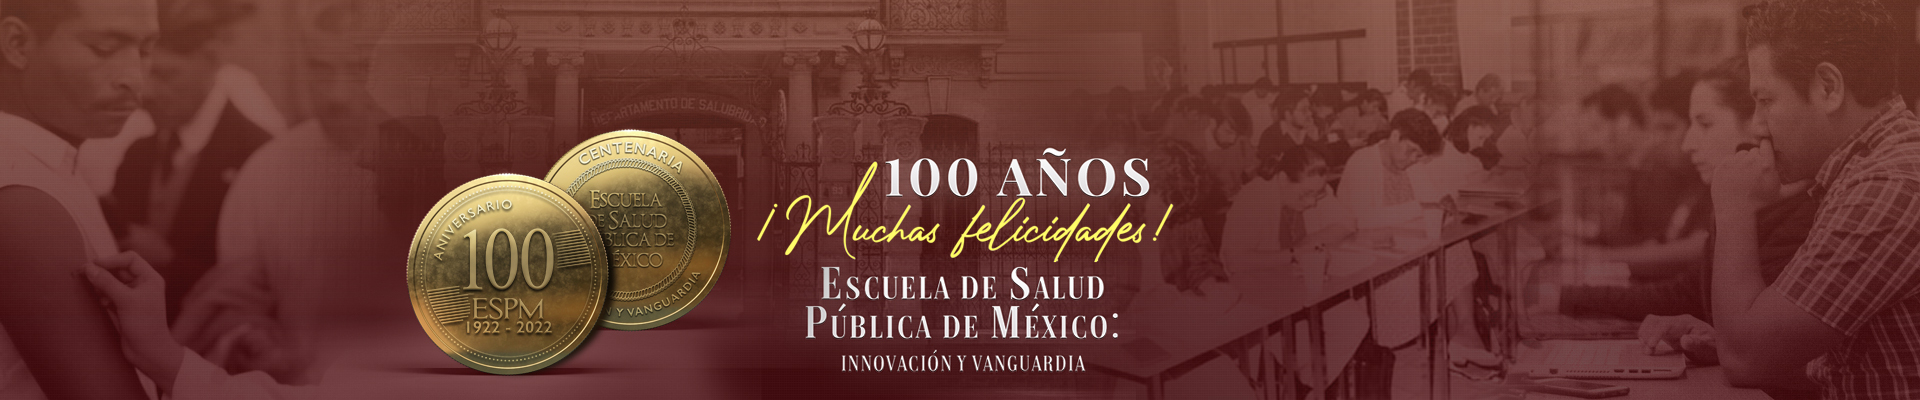 100 años trabajando a favor de la salud pública de México